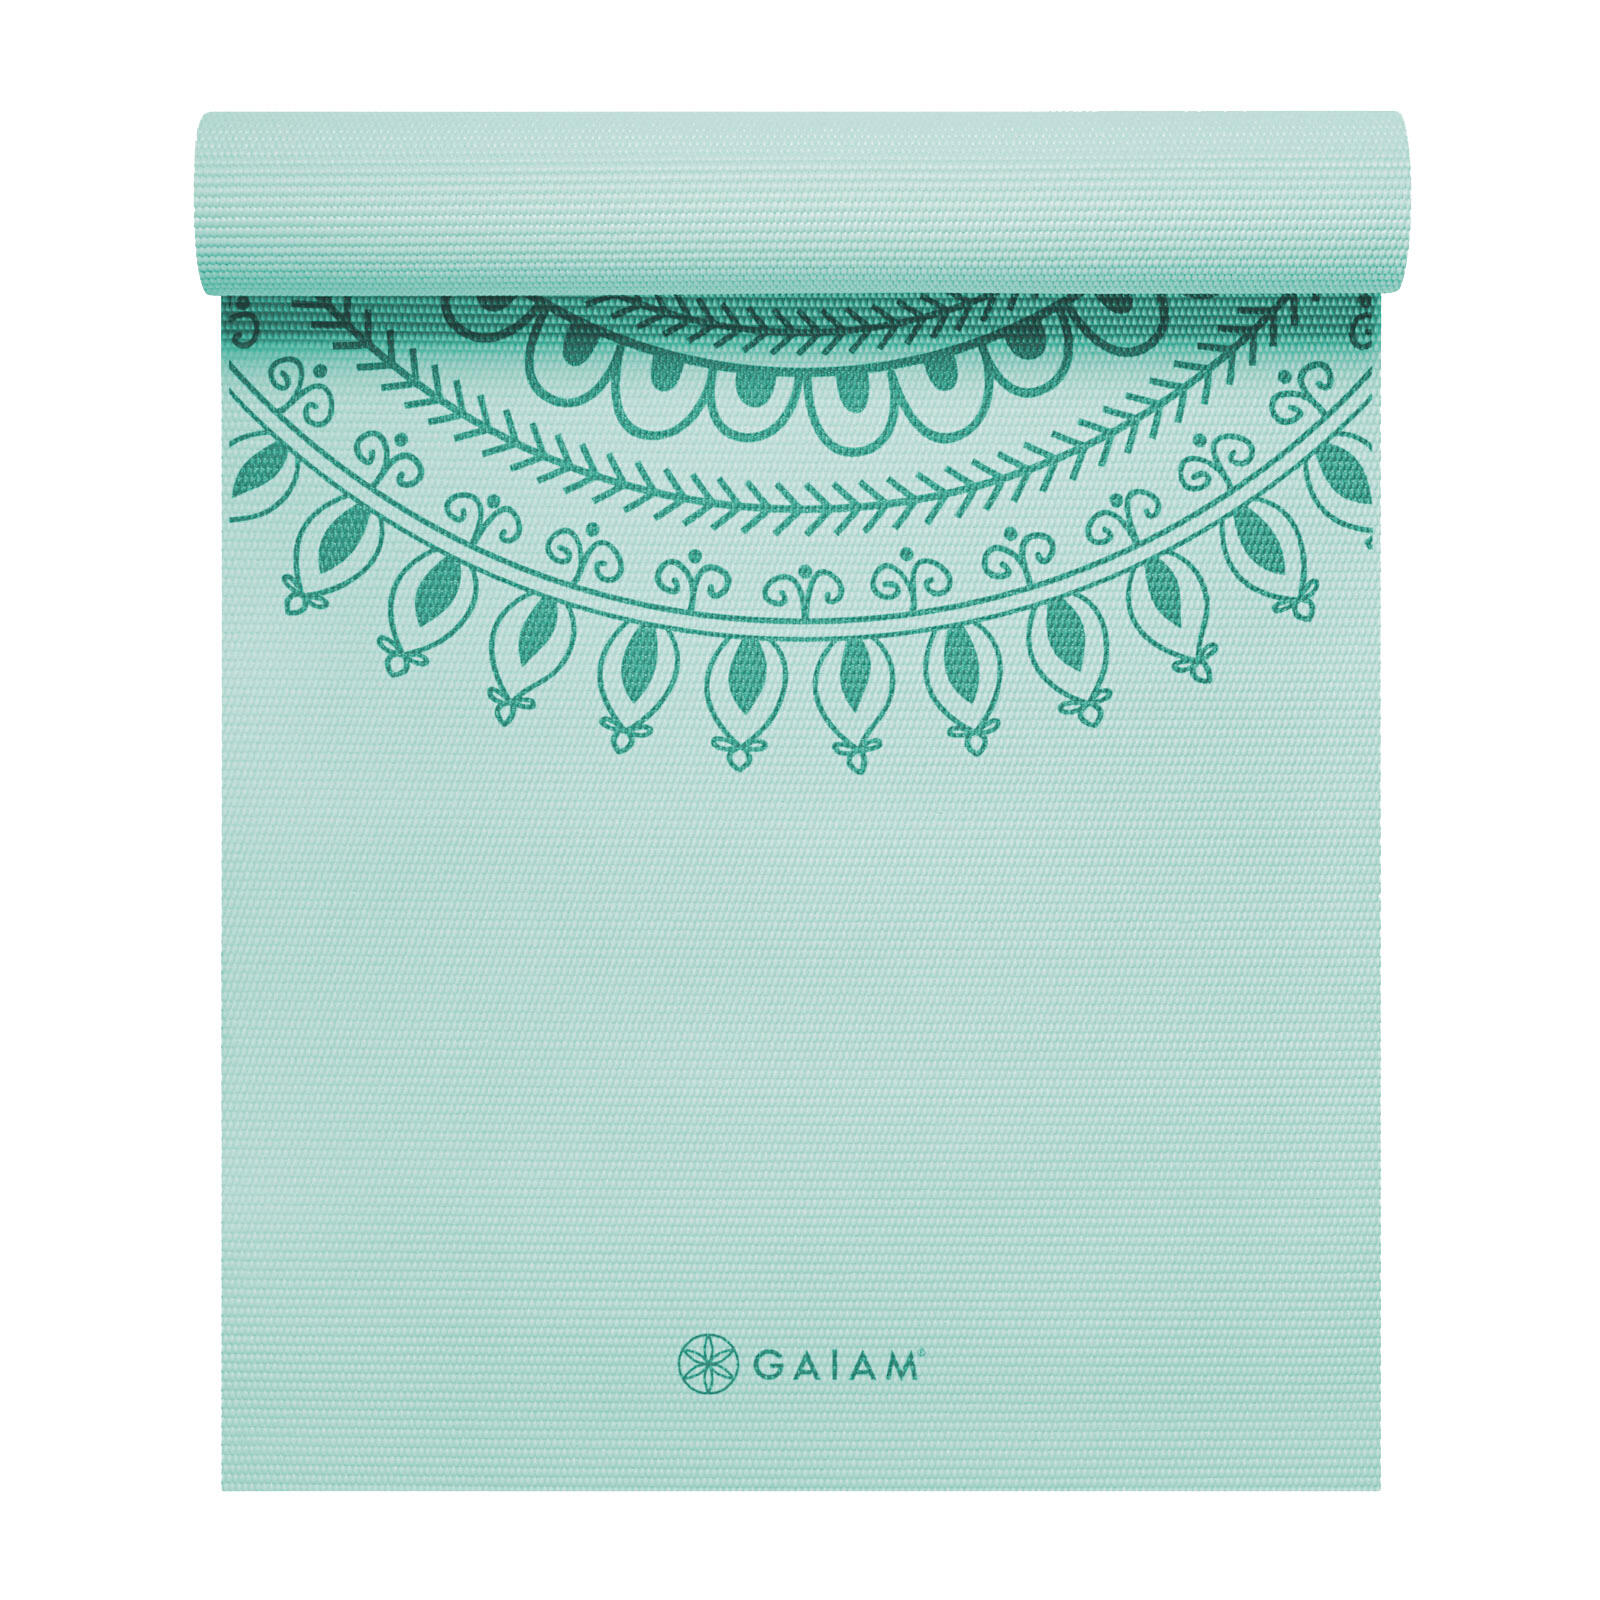 GAIAM Gaiam Marrakesh Turquoise Yoga Mat 6mm